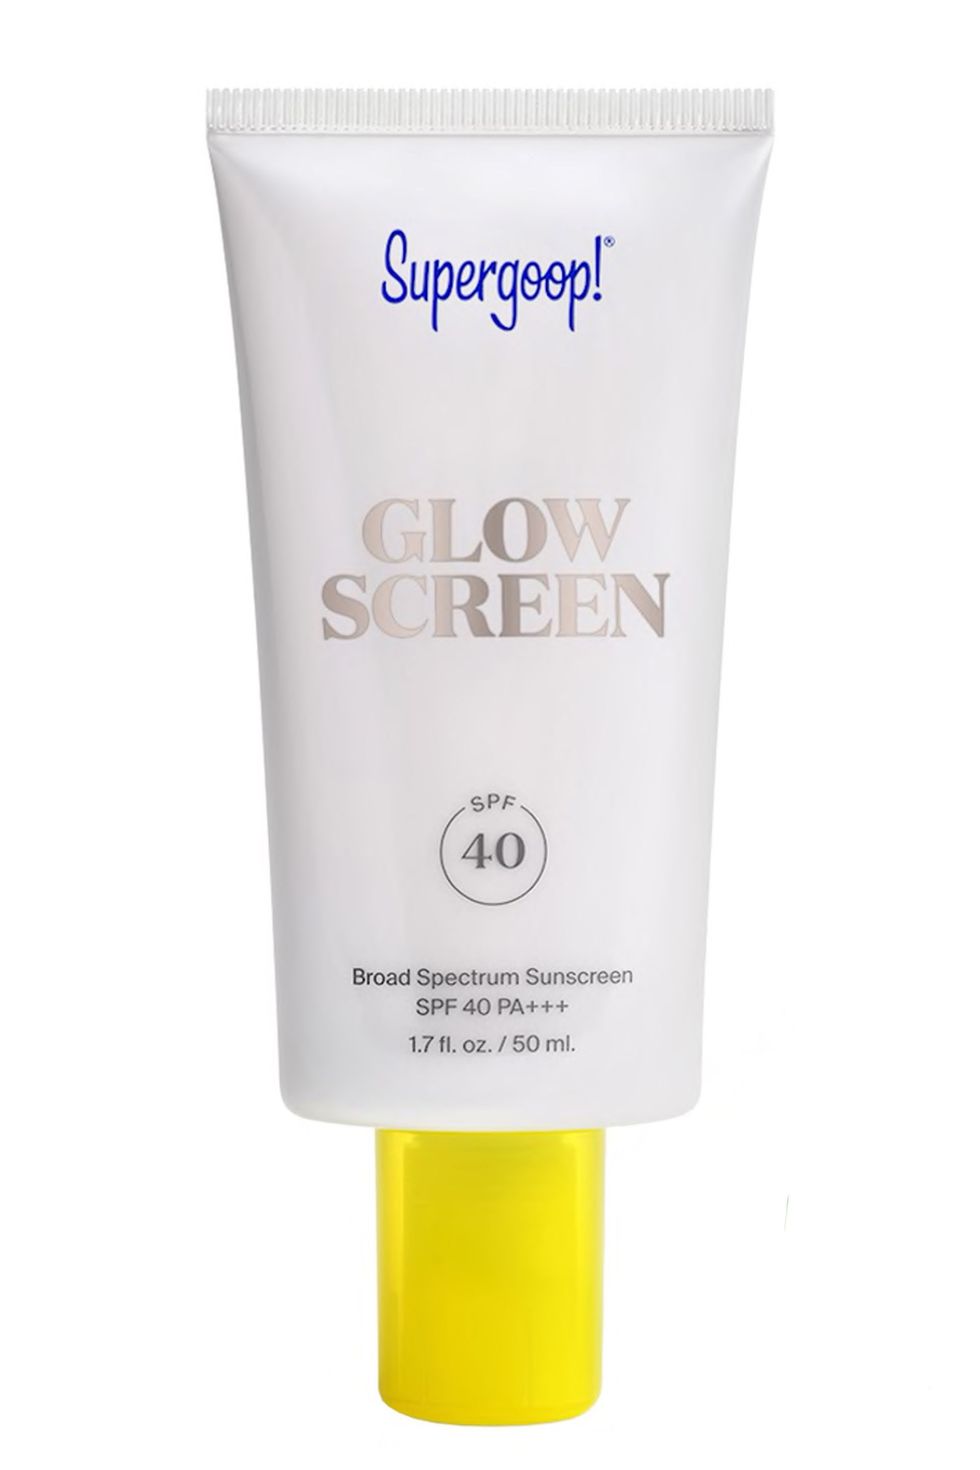 Glowscreen Sunscreen SPF 40 